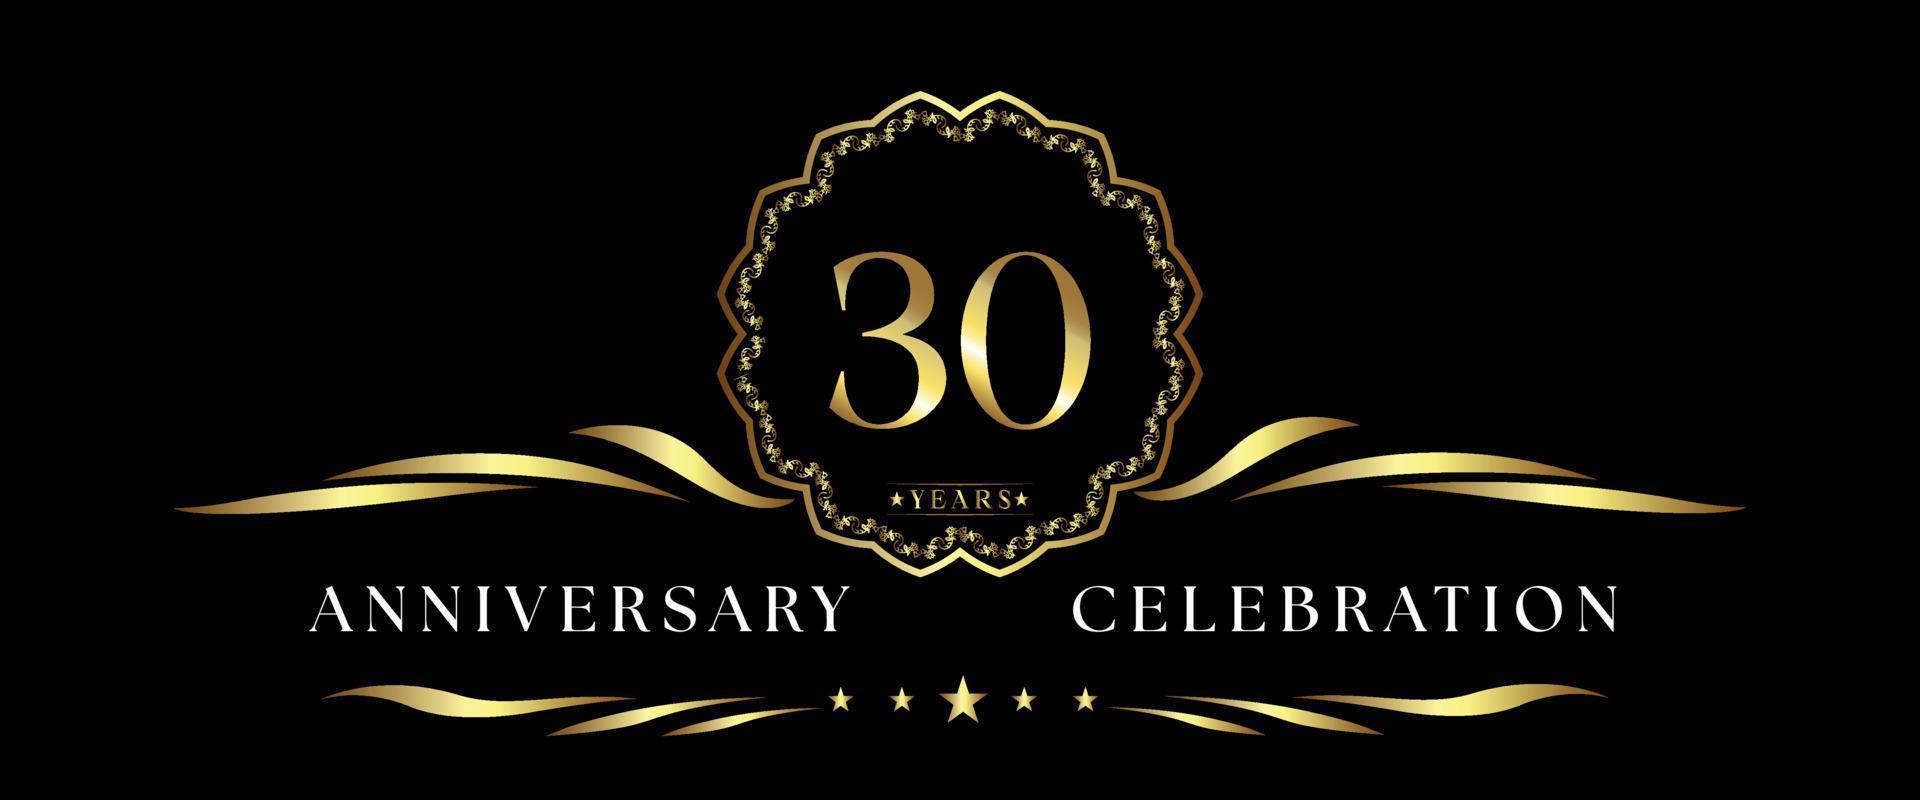 Celebración del aniversario de 30 años con marco decorativo dorado aislado en fondo negro. diseño vectorial para tarjetas de felicitación, fiesta de cumpleaños, boda, fiesta de eventos, ceremonia. Logotipo de aniversario de 30 años. vector